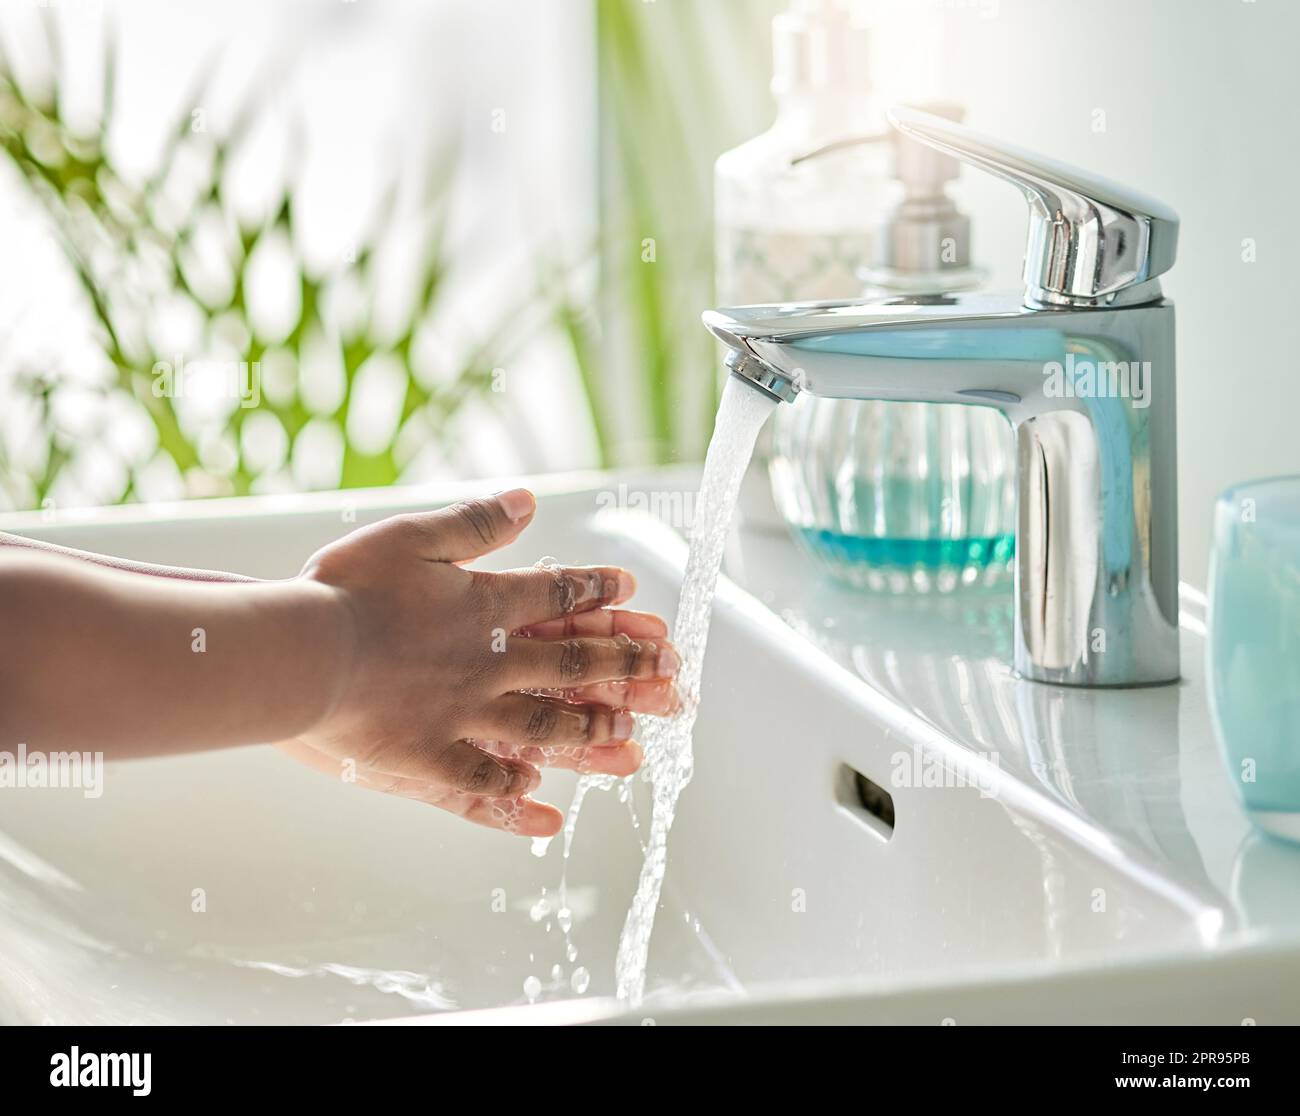 Waschen Sie Ihre Hände und Finger, um alle Keime zu töten, die verharzen. Nahaufnahme eines nicht erkennbaren Jungen, der sich in einem Badezimmer zu Hause am Wasserhahn die Hände wascht. Stockfoto